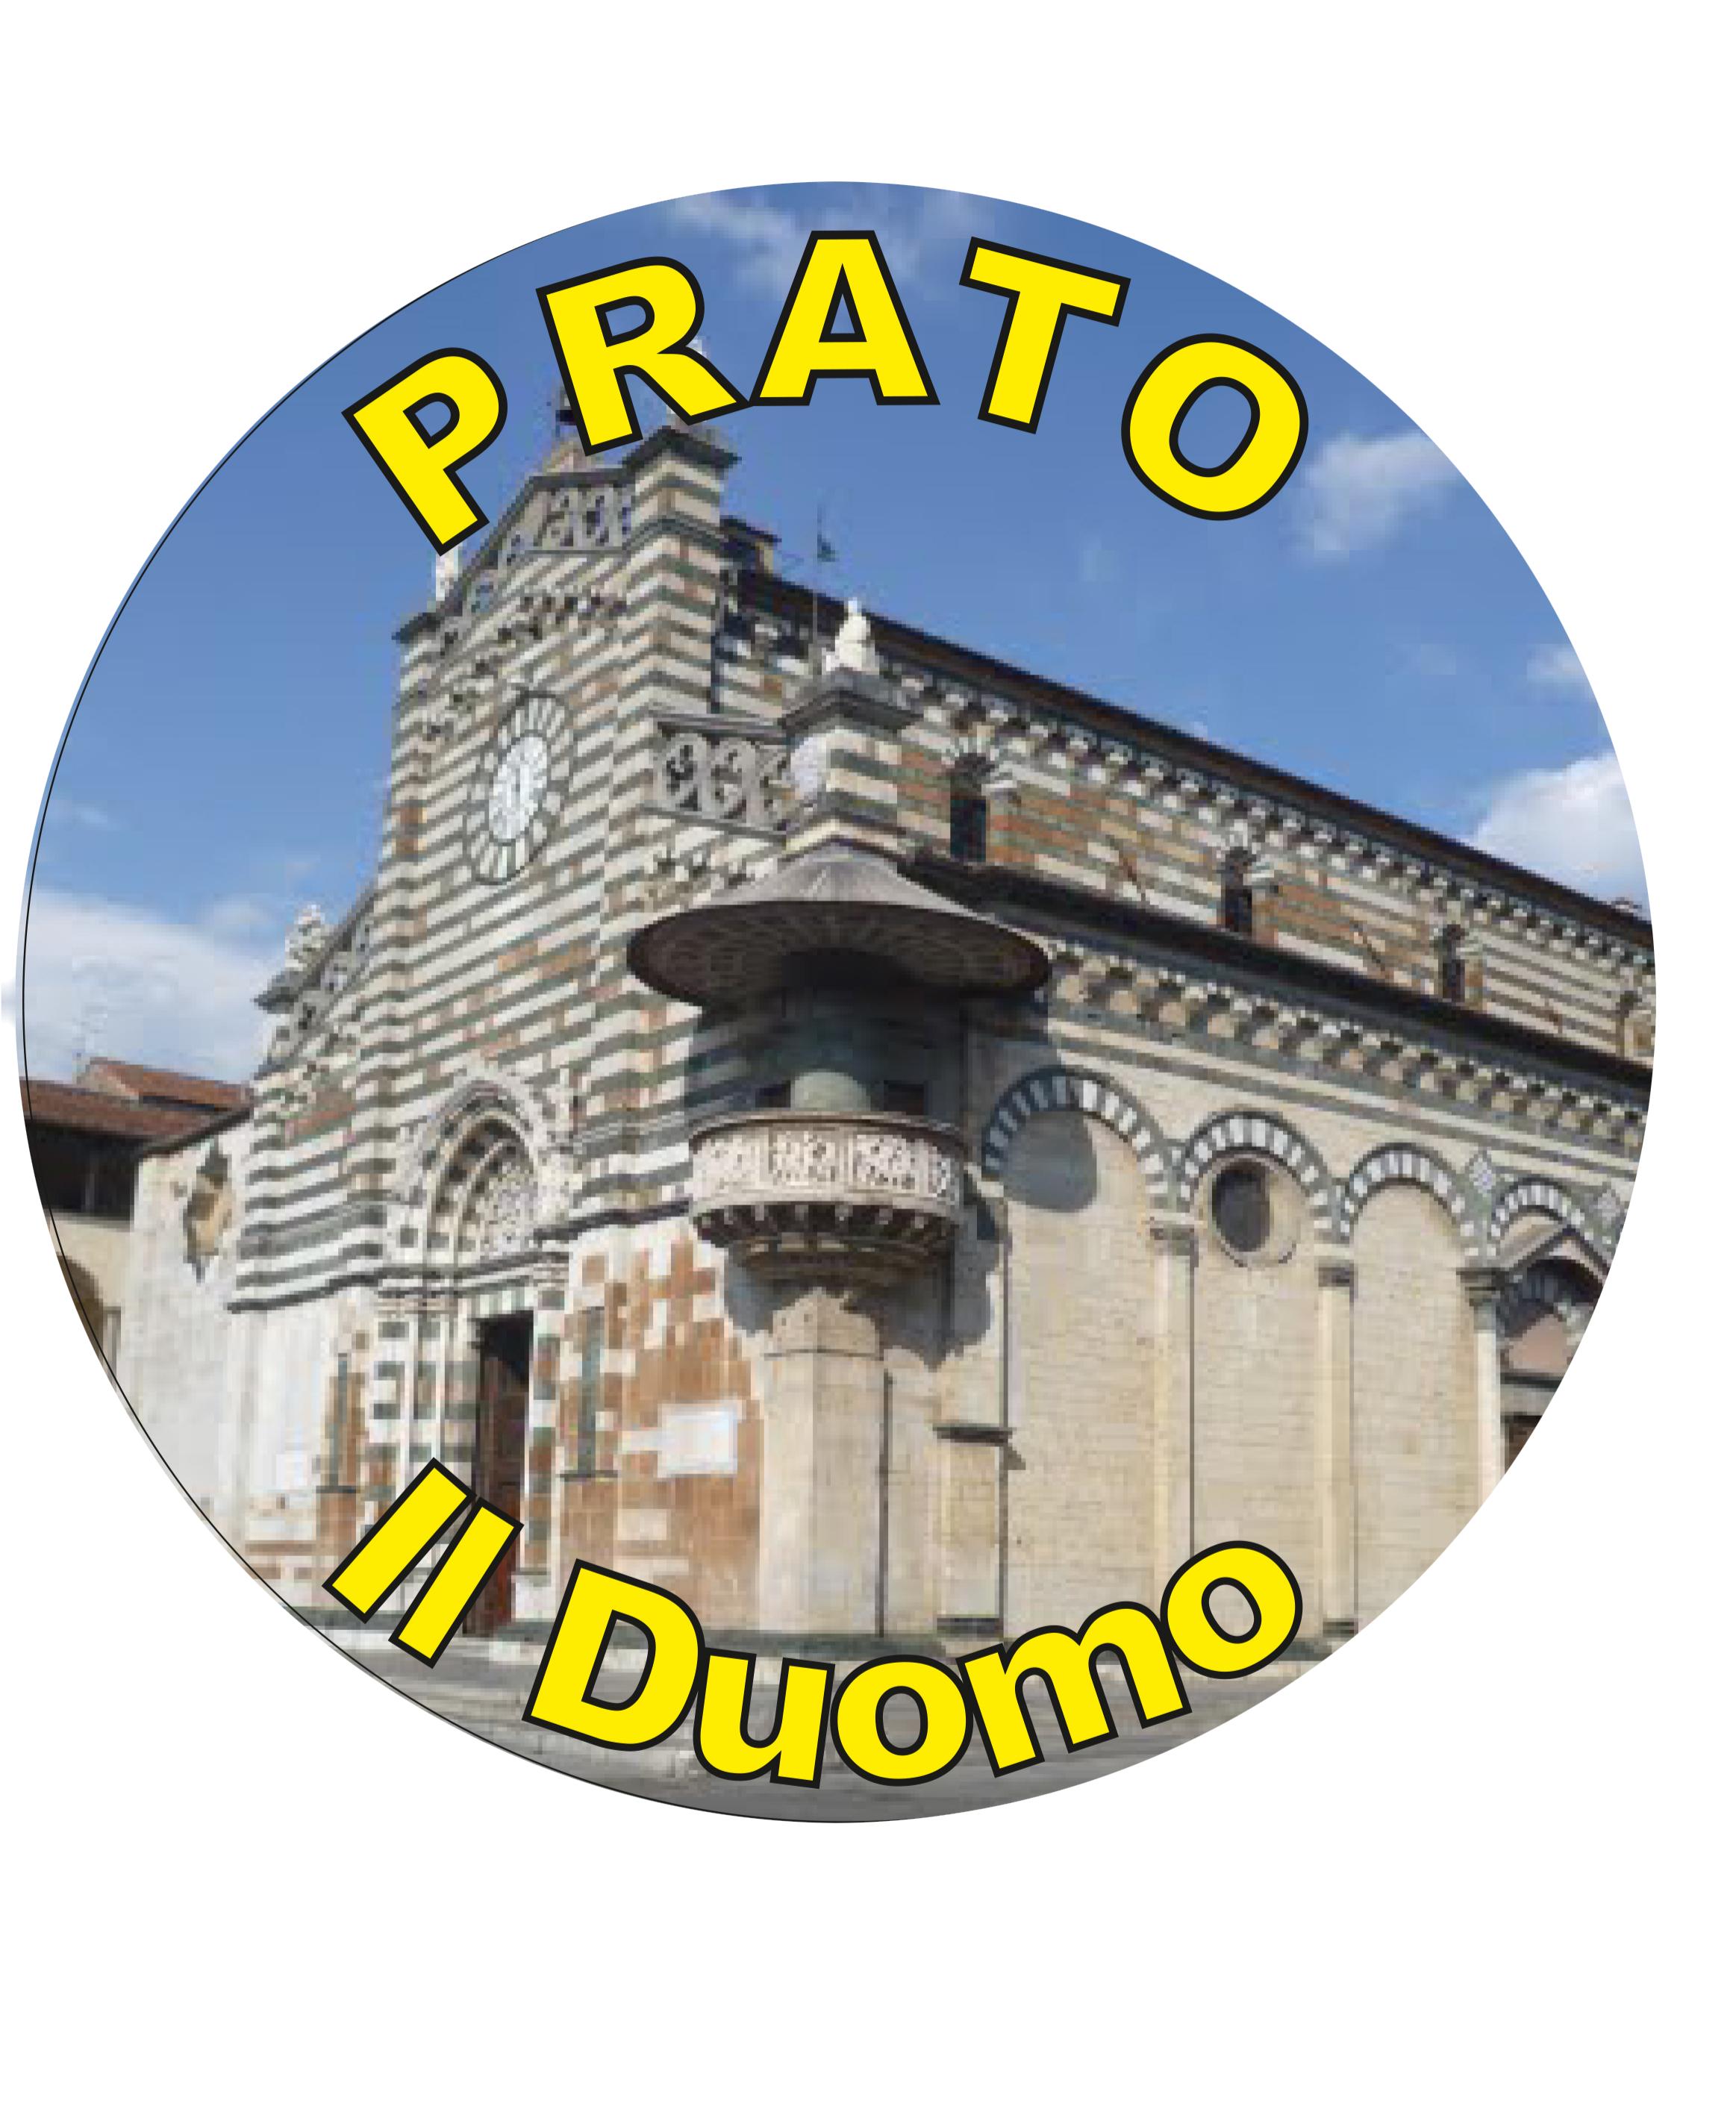 99-08-41-2102 Adesivi Prato Tondo mm21 Duomo CONFEZIONI DA 10 PZ